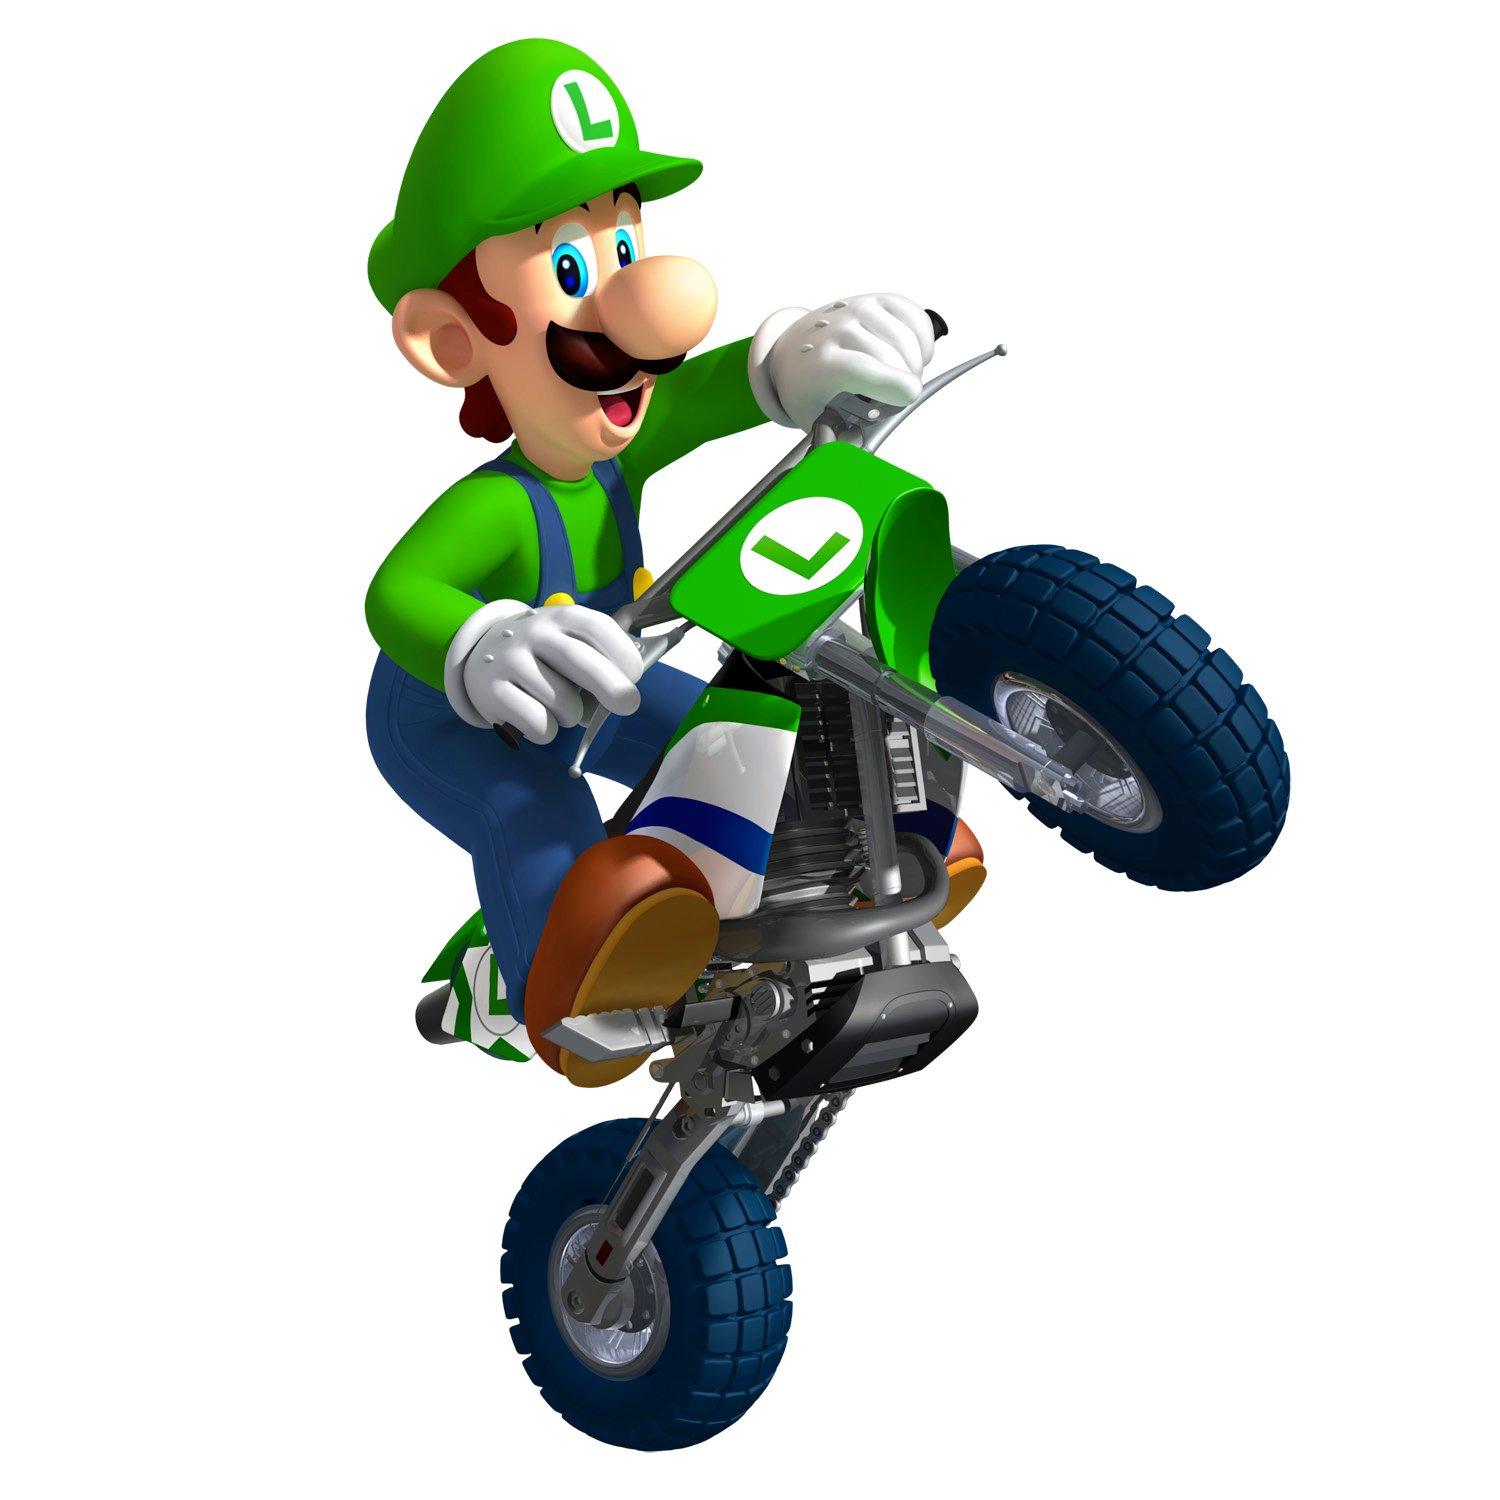 Super Mario Mario Kart Wii Luigi Set 